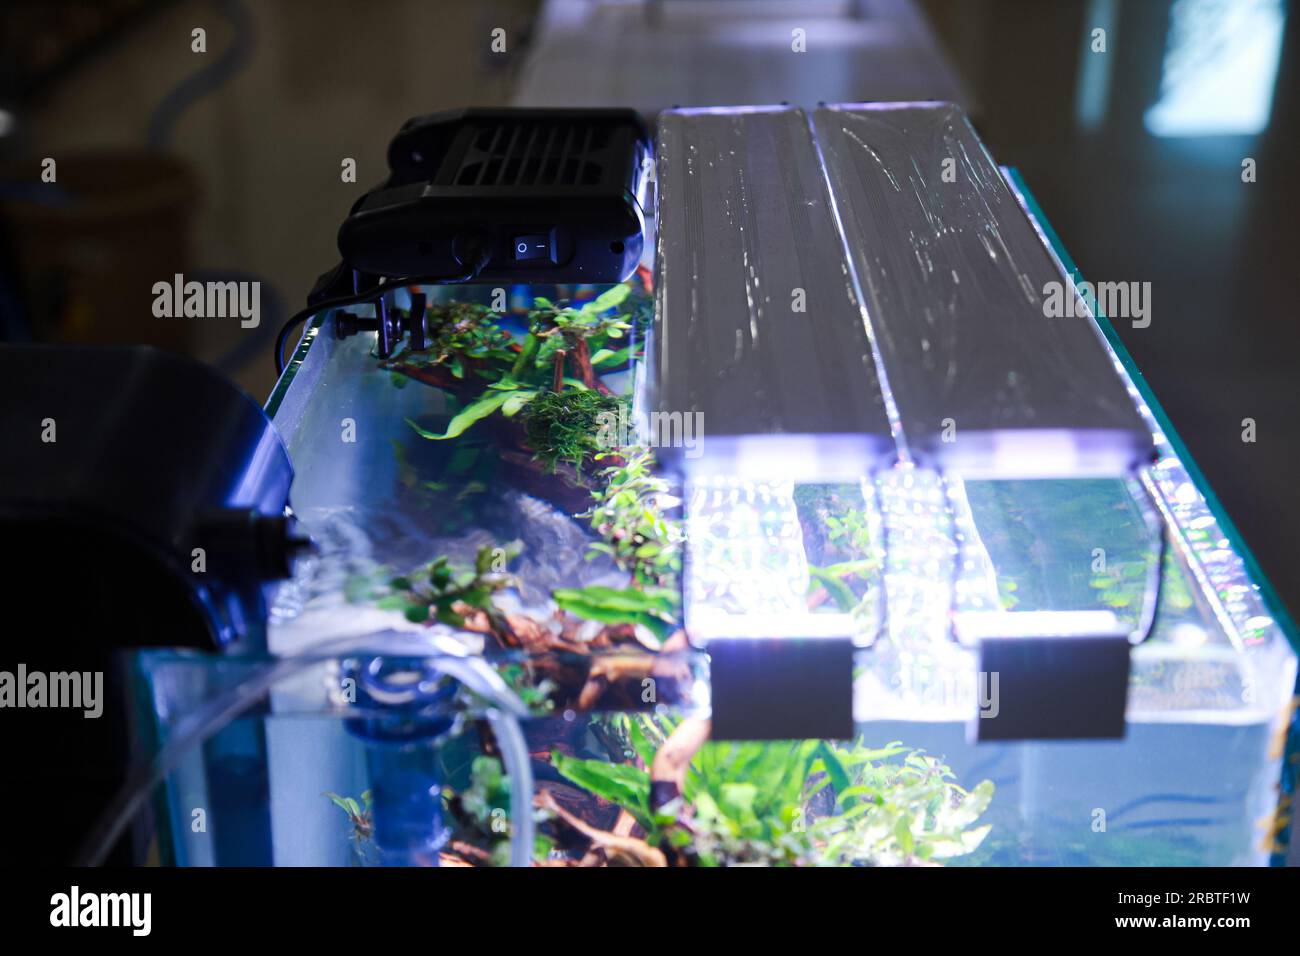 placer des lumières ultraviolettes au-dessus de l'aquarium pour soutenir le processus de photosynthèse dans les plantes aquascape Banque D'Images